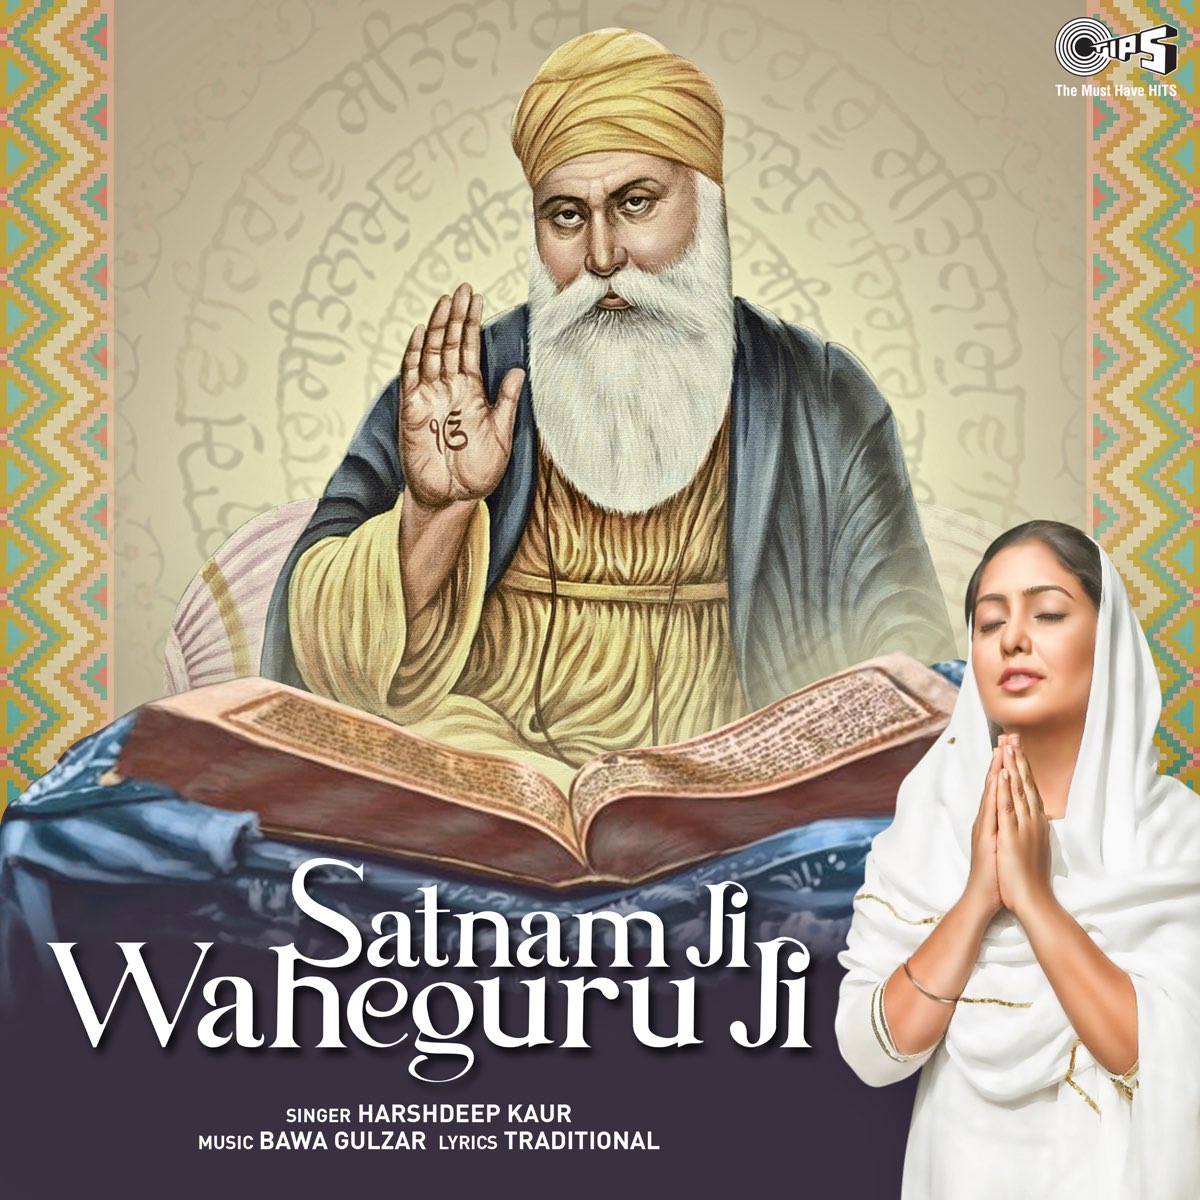 Satnam Ji Waheguru Ji - Single by Bawa Gulzar on Apple Music